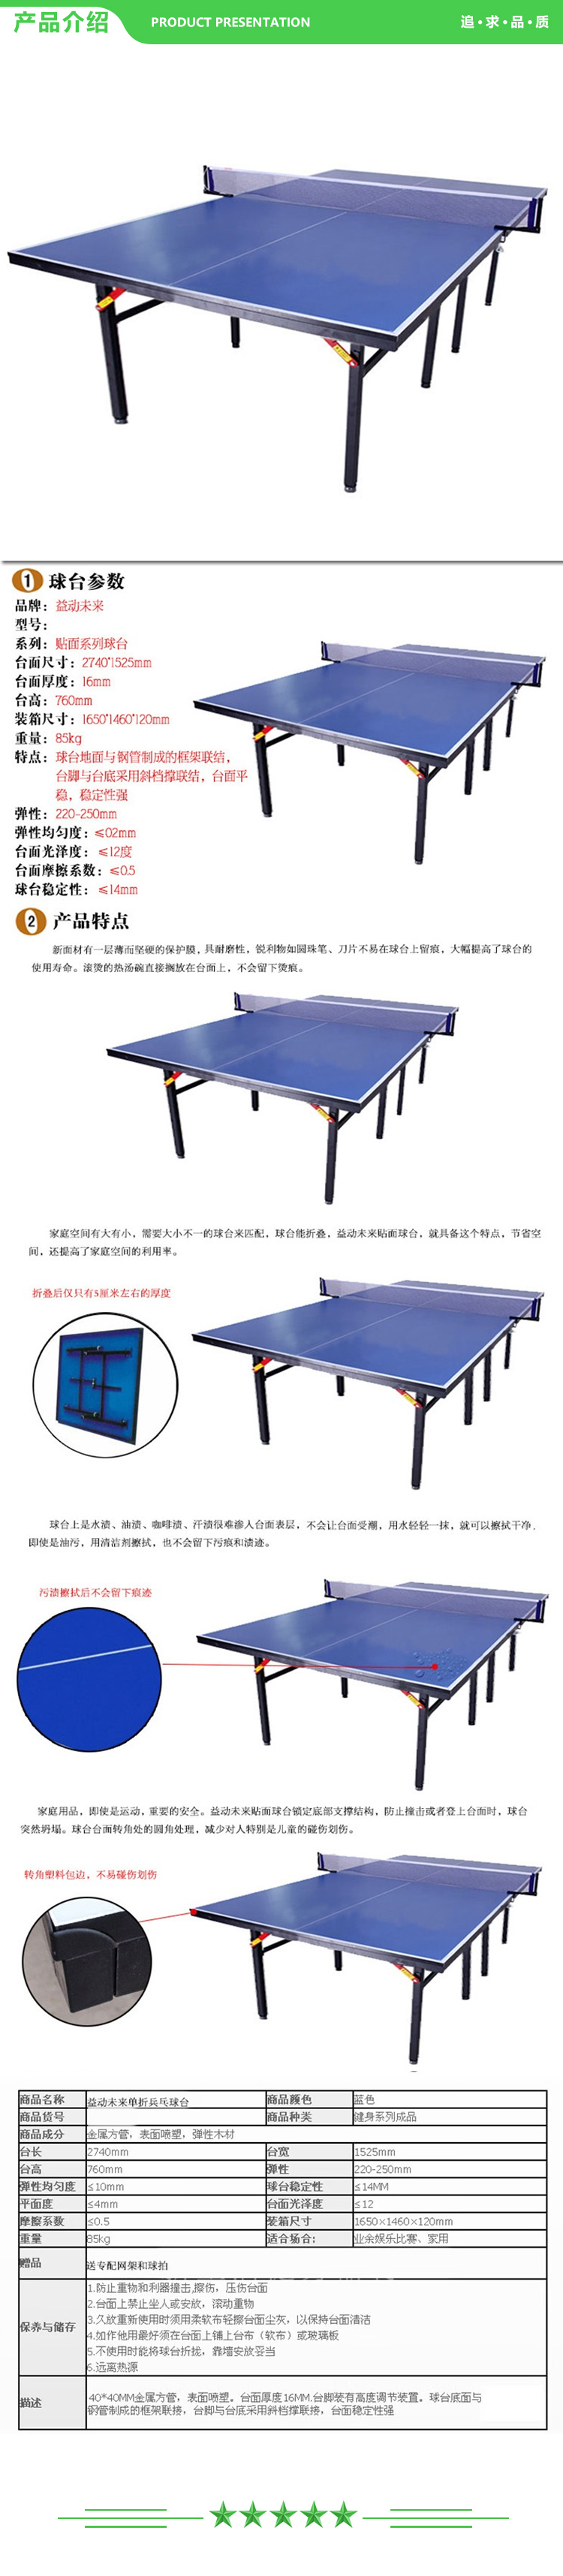 益动未来 移动款 乒乓球台 加厚 标准 室内乒乓球桌 移动折叠乒乓球台 2.jpg